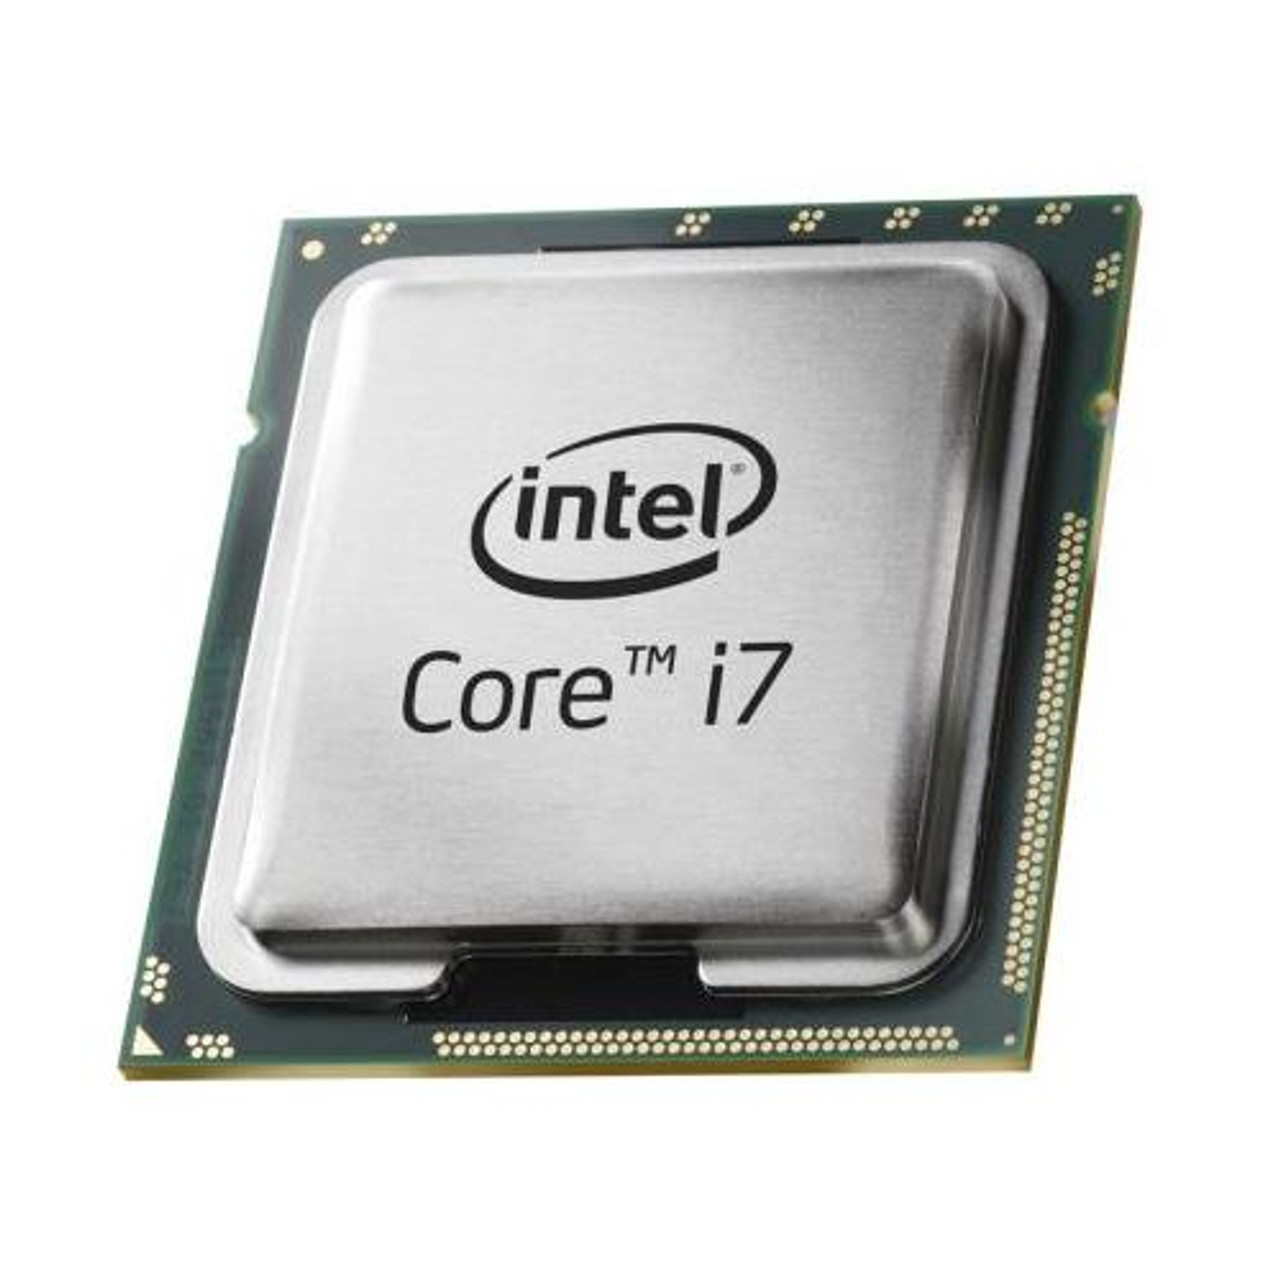 Plunderen aan de andere kant, Pakket AT80601000921AA Intel Core i7 Desktop 2.93 GHz Processor Unboxed OEM